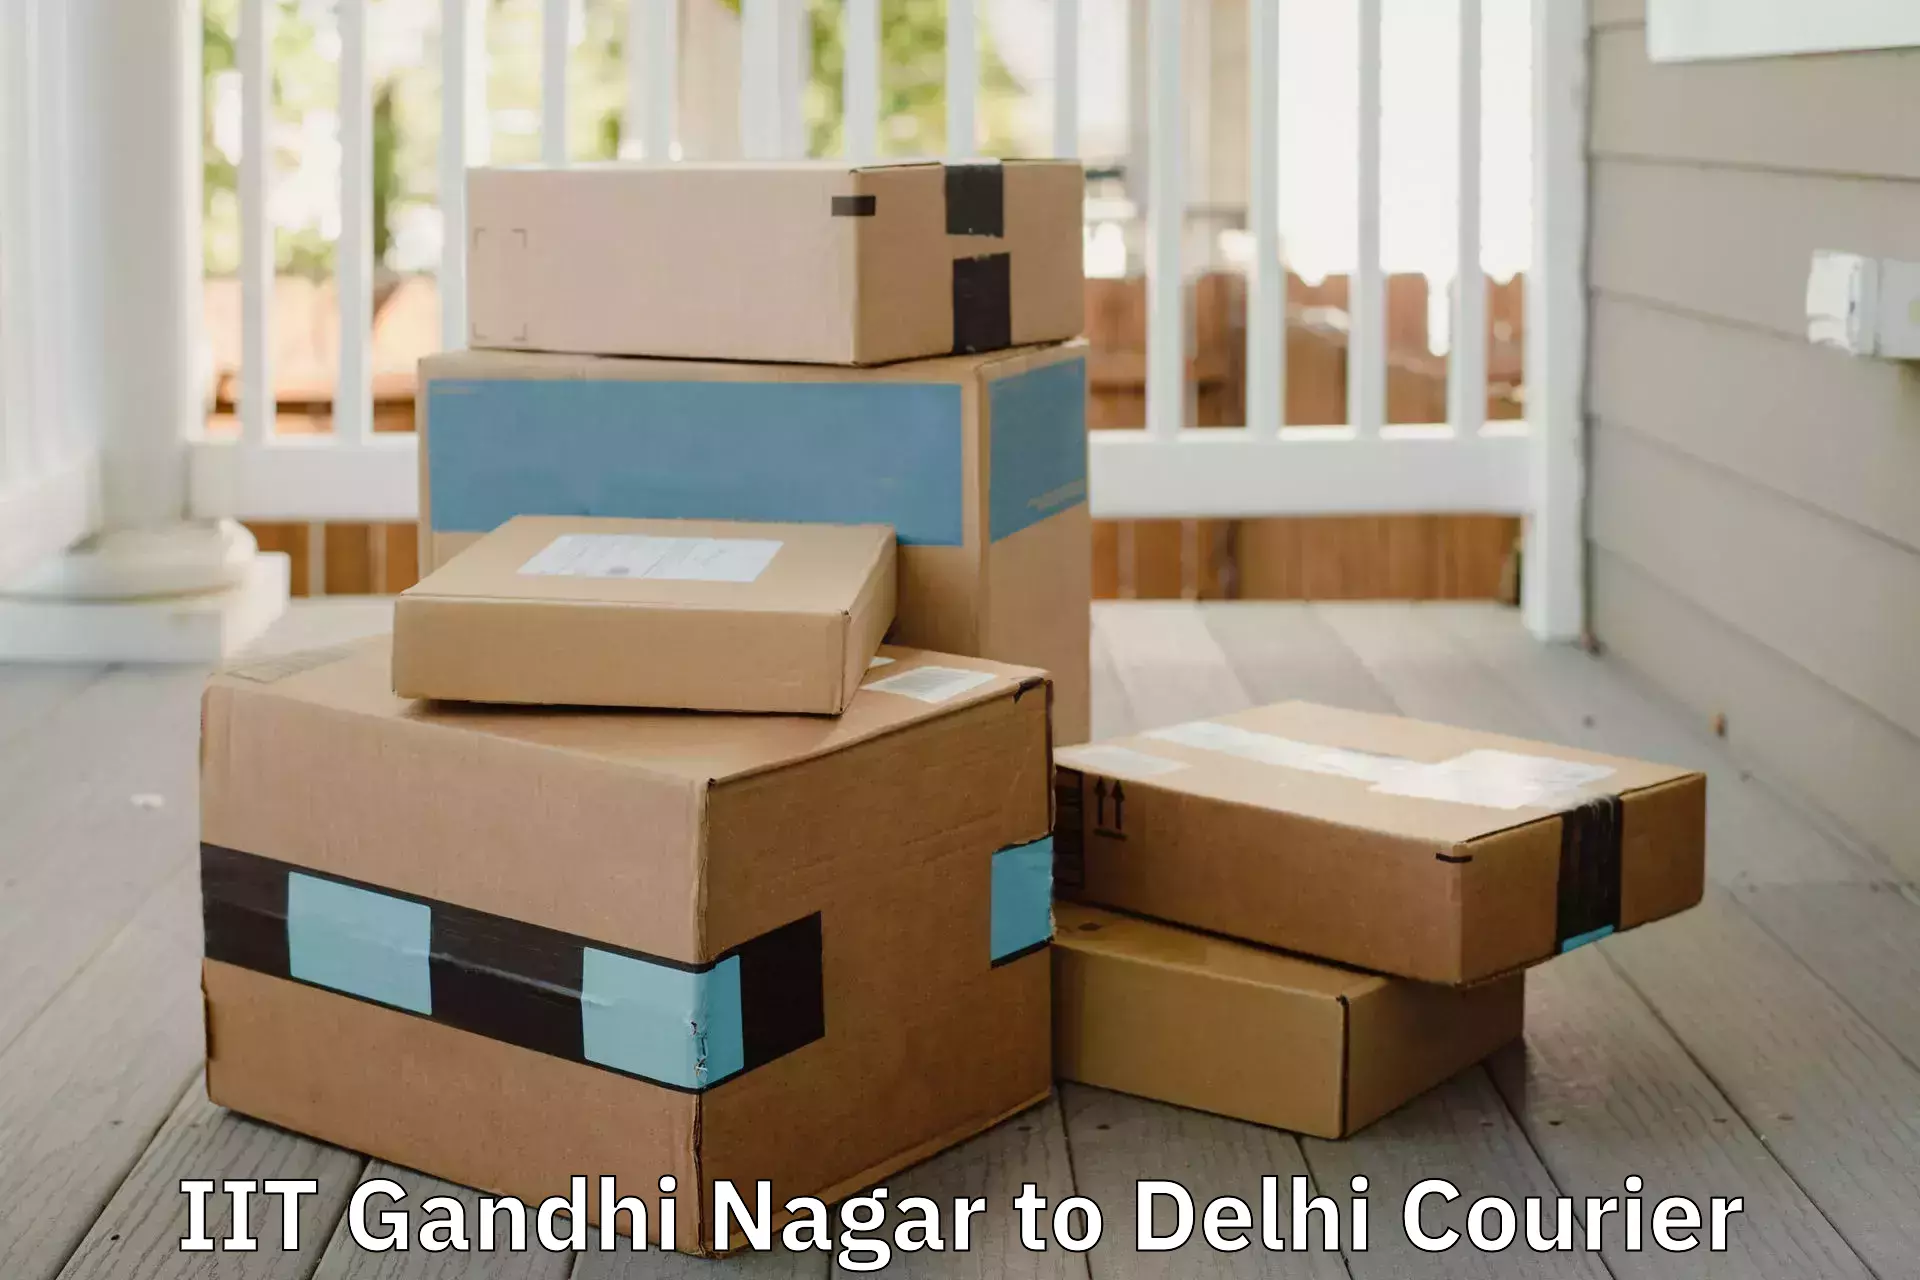 Professional household moving IIT Gandhi Nagar to NCR